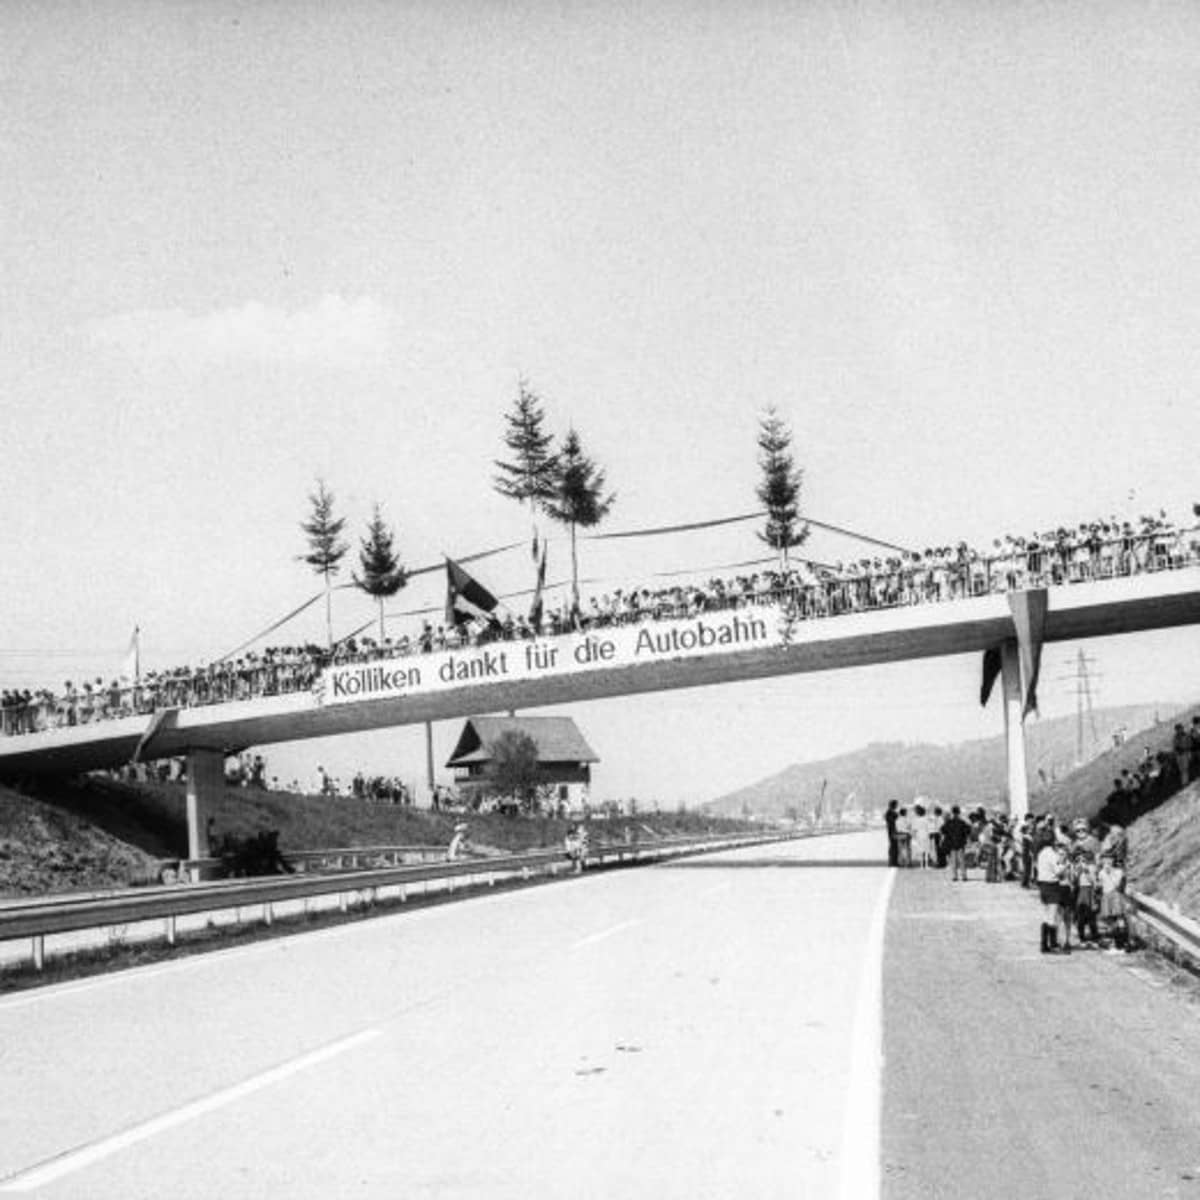 Autobahnbrücke mit Spruchband und zahlreiche Besucher auf der Brücke und an der Autobahn.